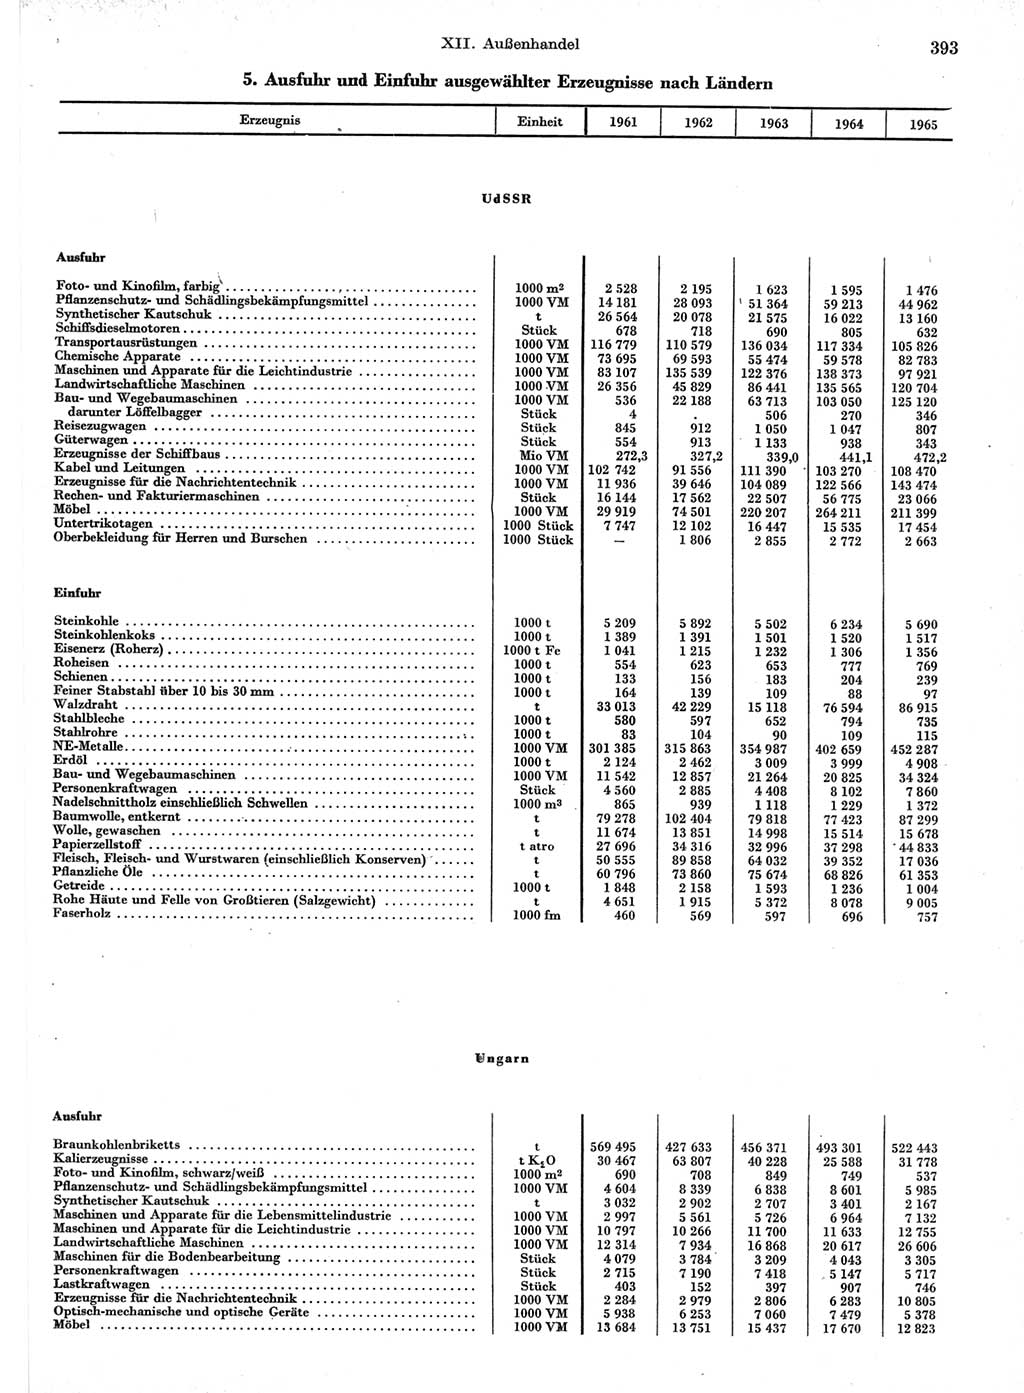 Statistisches Jahrbuch der Deutschen Demokratischen Republik (DDR) 1966, Seite 393 (Stat. Jb. DDR 1966, S. 393)